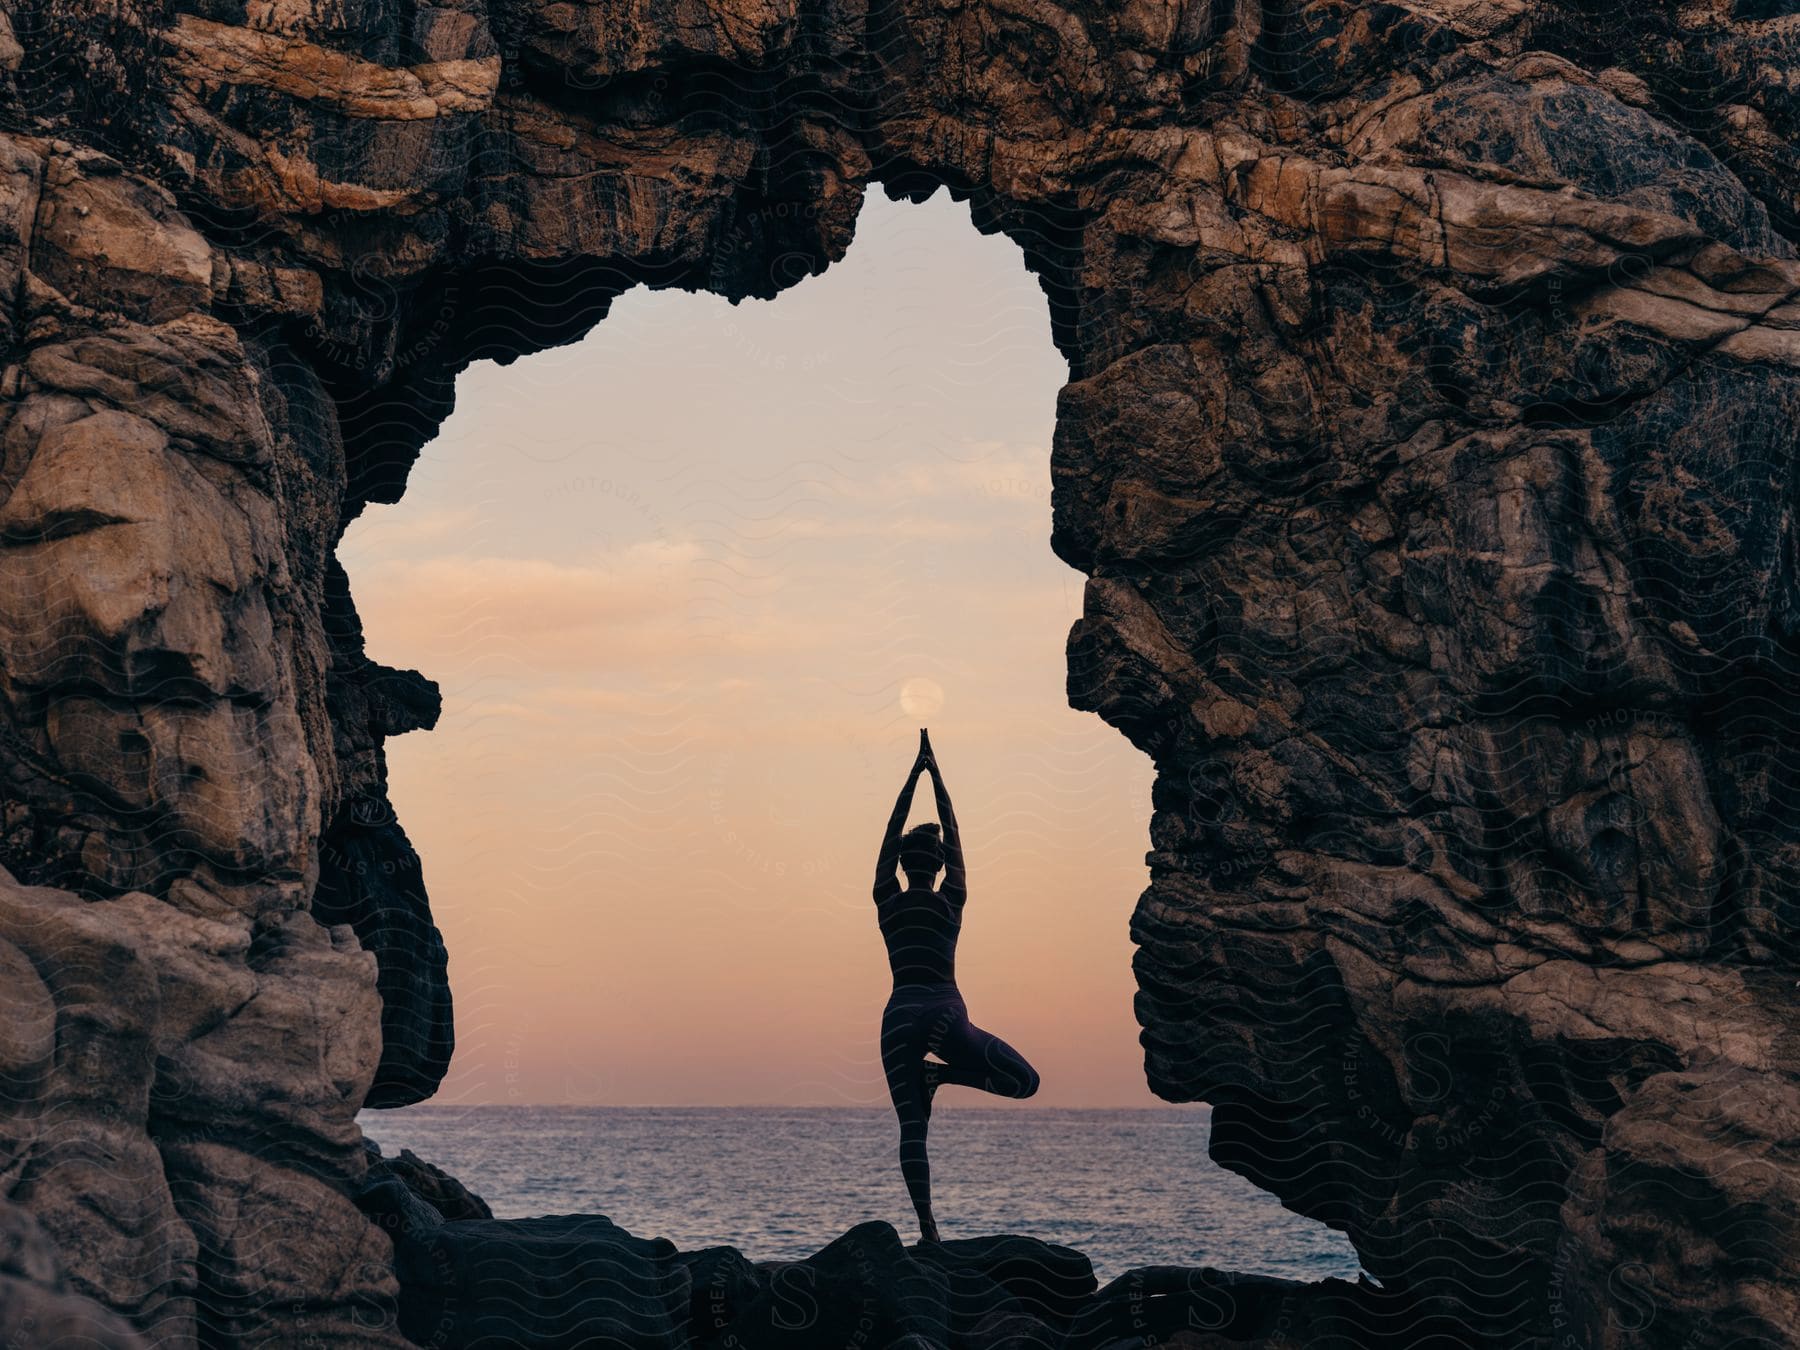 a woman doing yoga on a rocky beach near the ocean at sunset